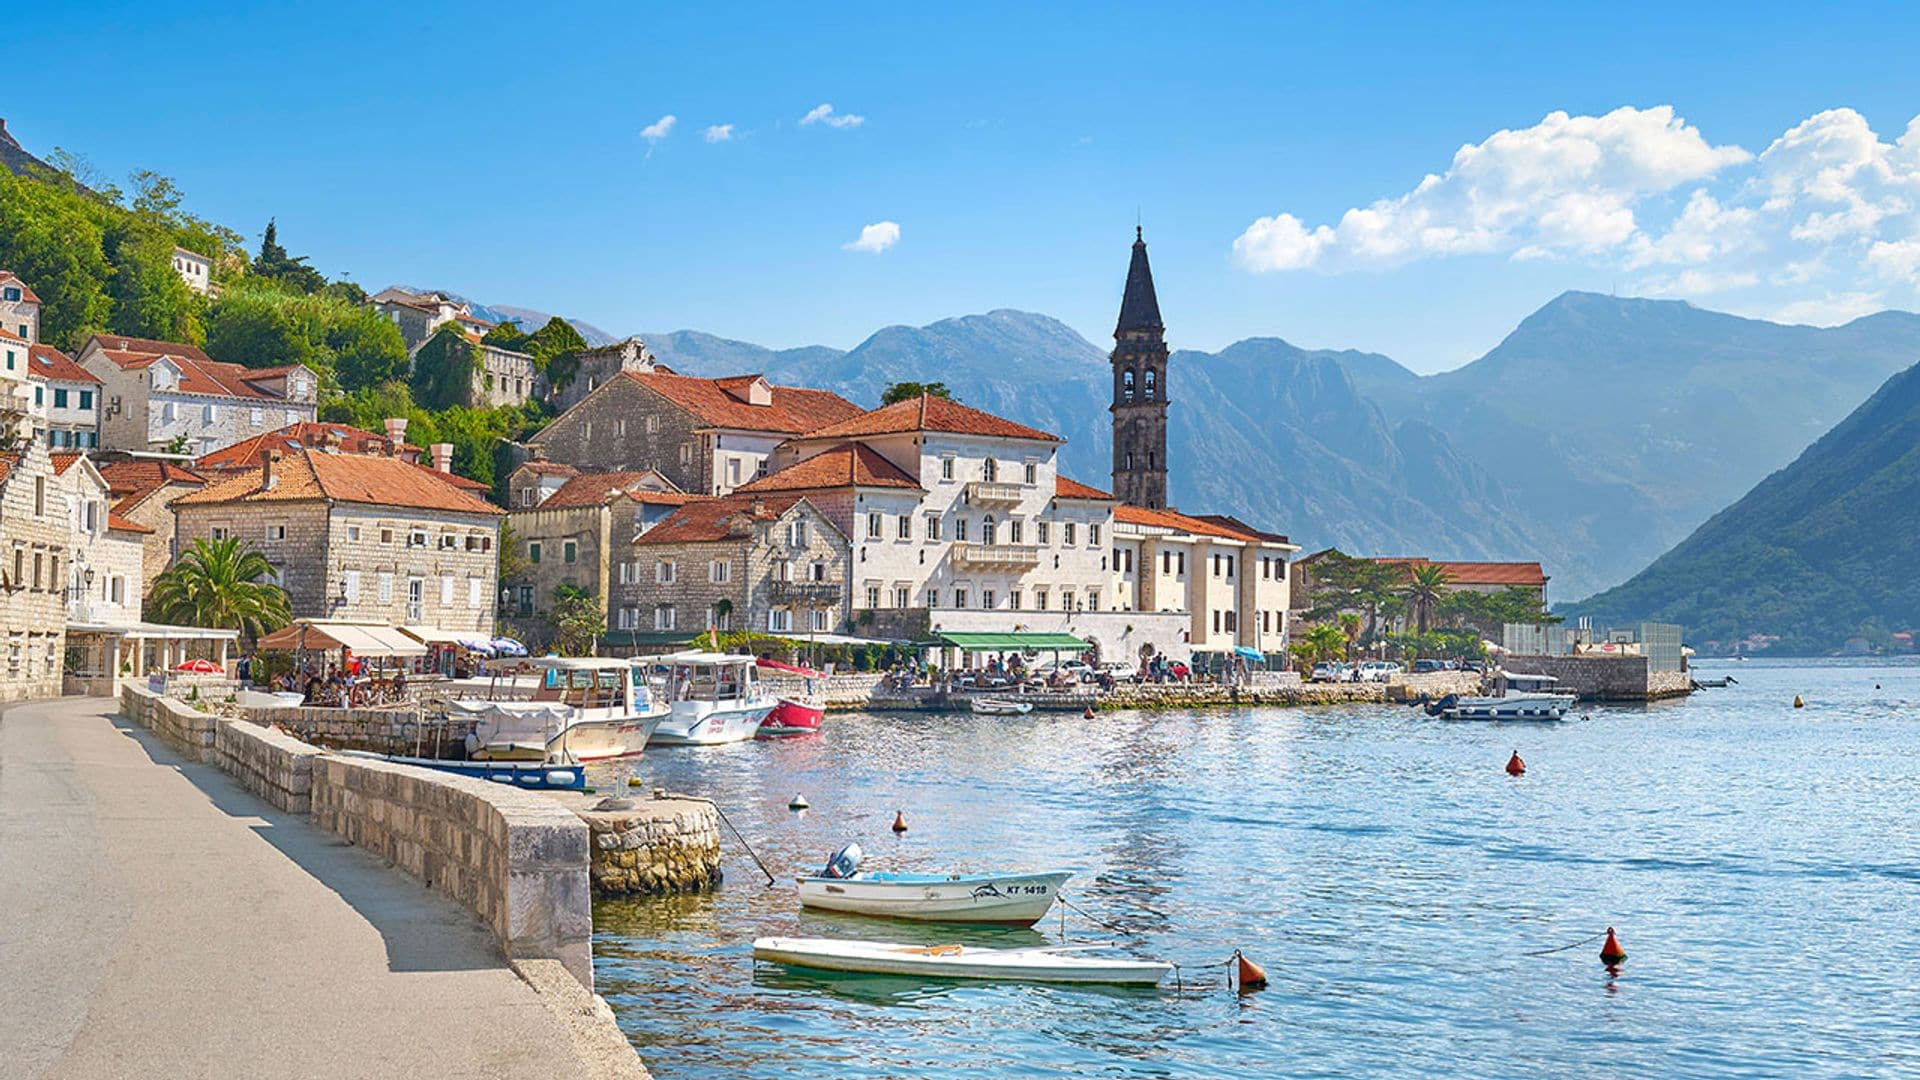 Las ciudades más bellas del sur de Europa bañadas por el Adriático